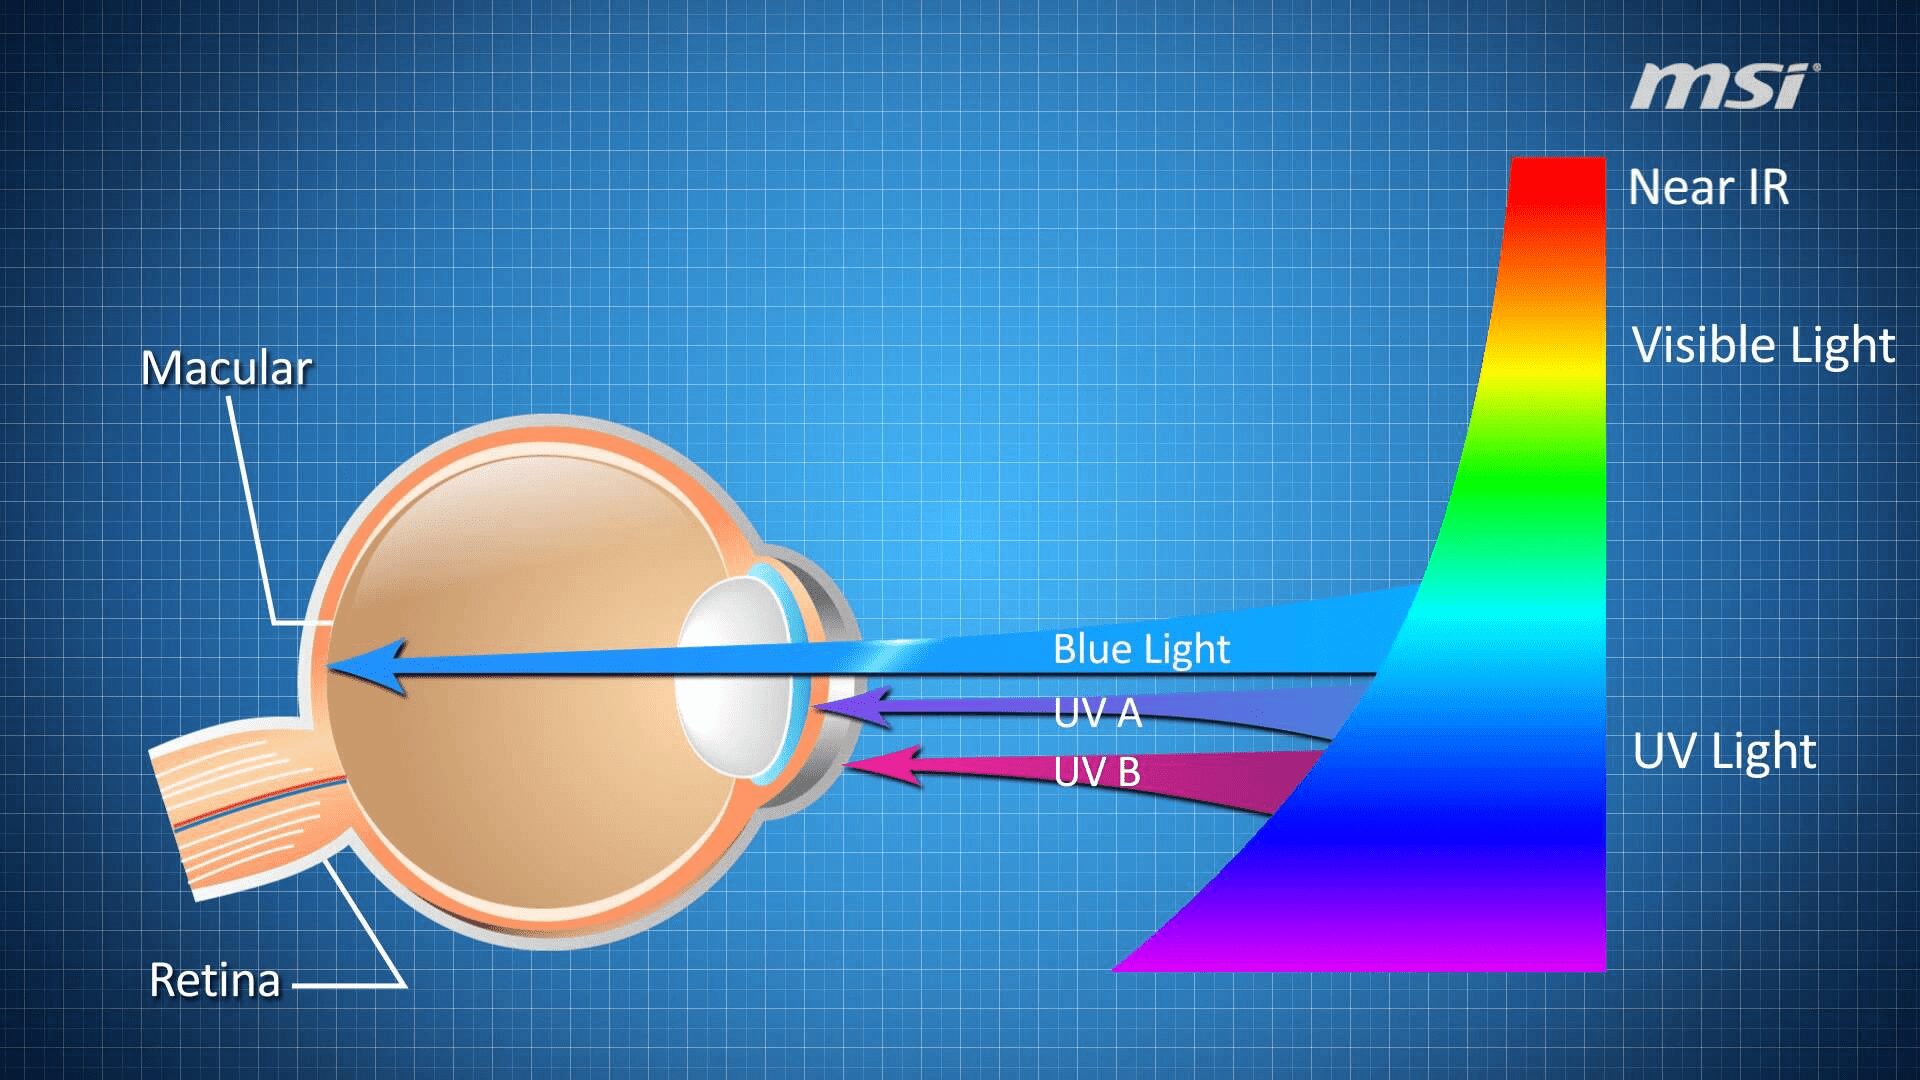 Cấu trúc của mắt người không bảo vệ được mắt khỏi ánh sáng xanh